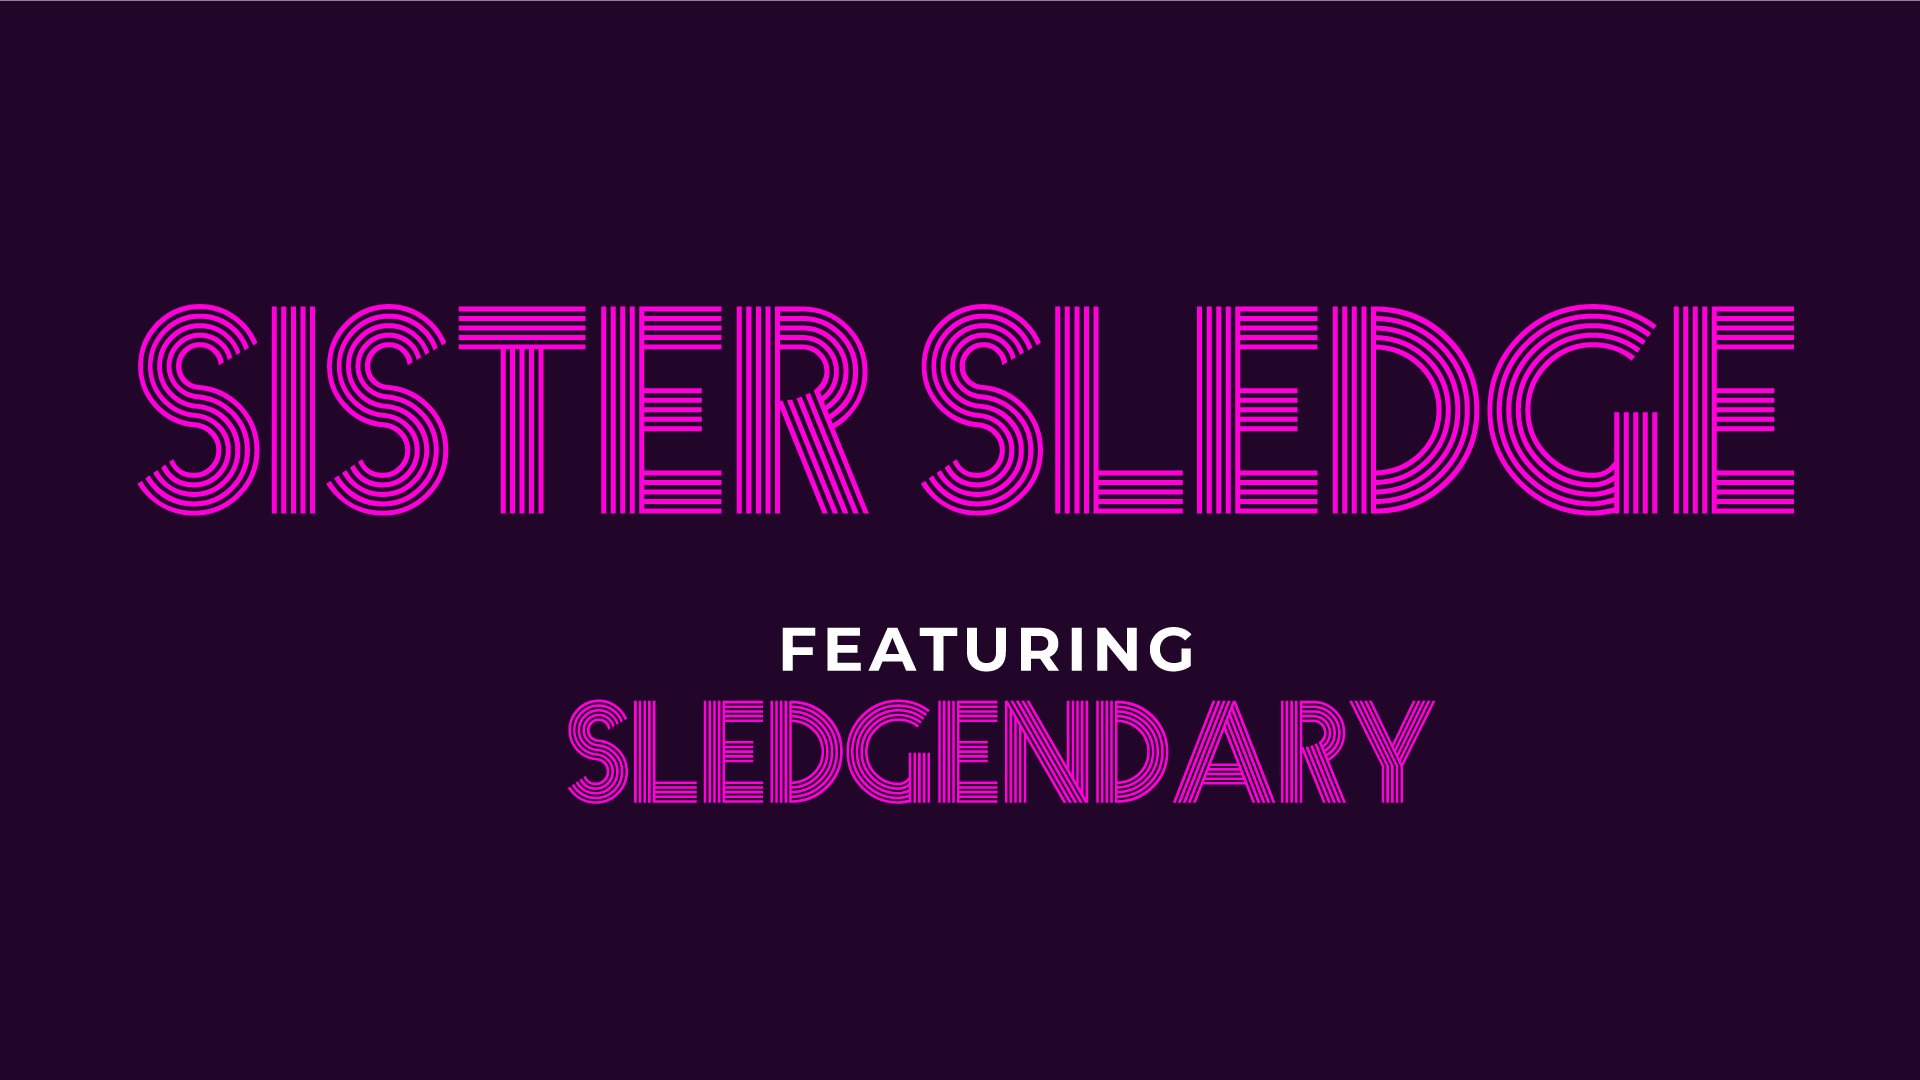 SISTER SLEDGE featuring SLEDGENDARY